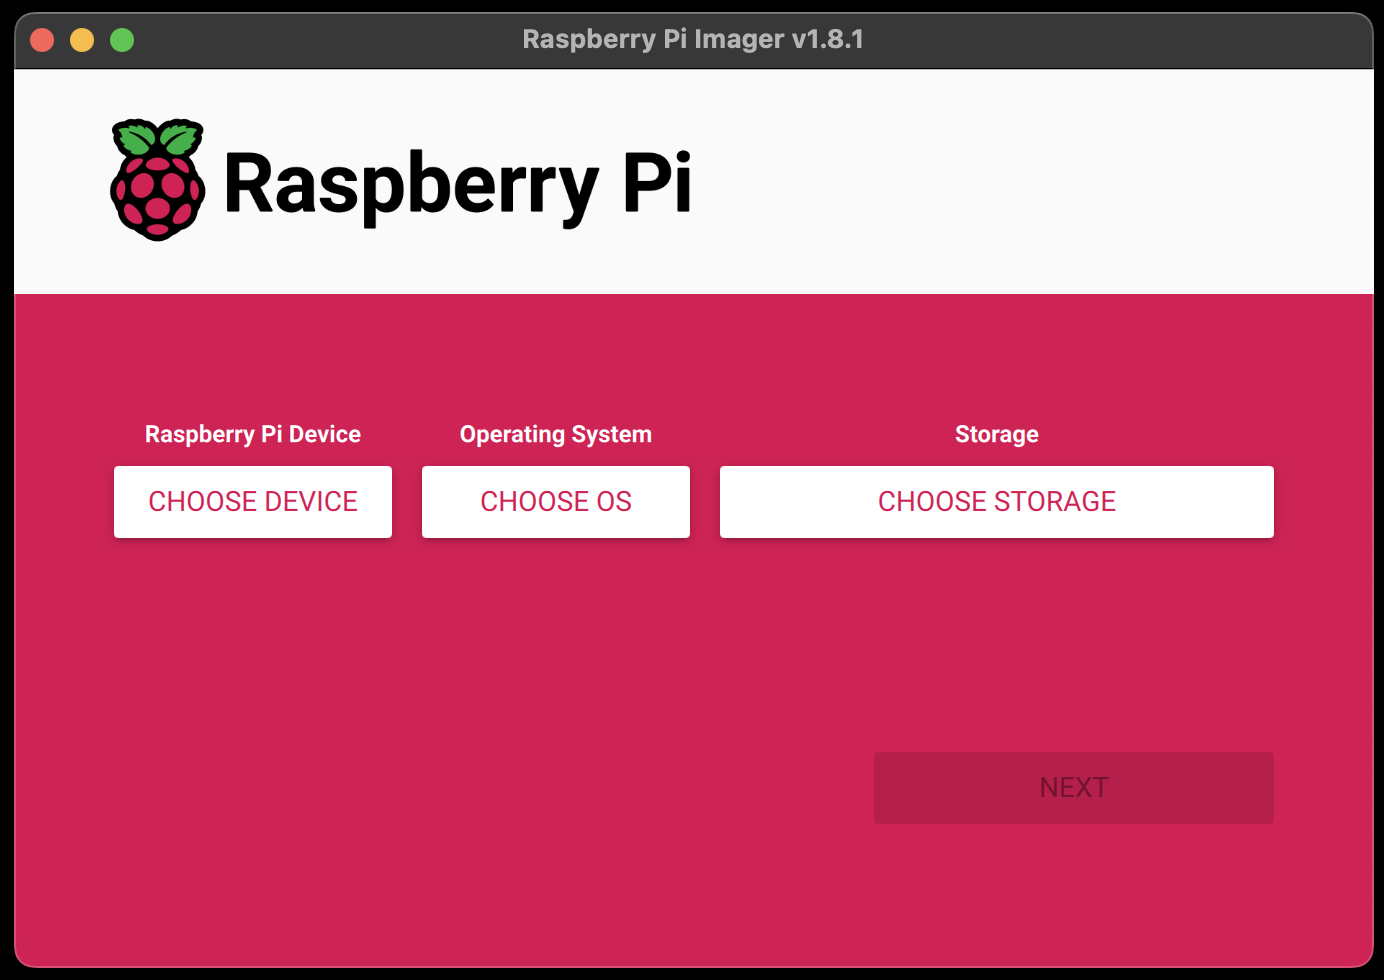 raspberry pi imager